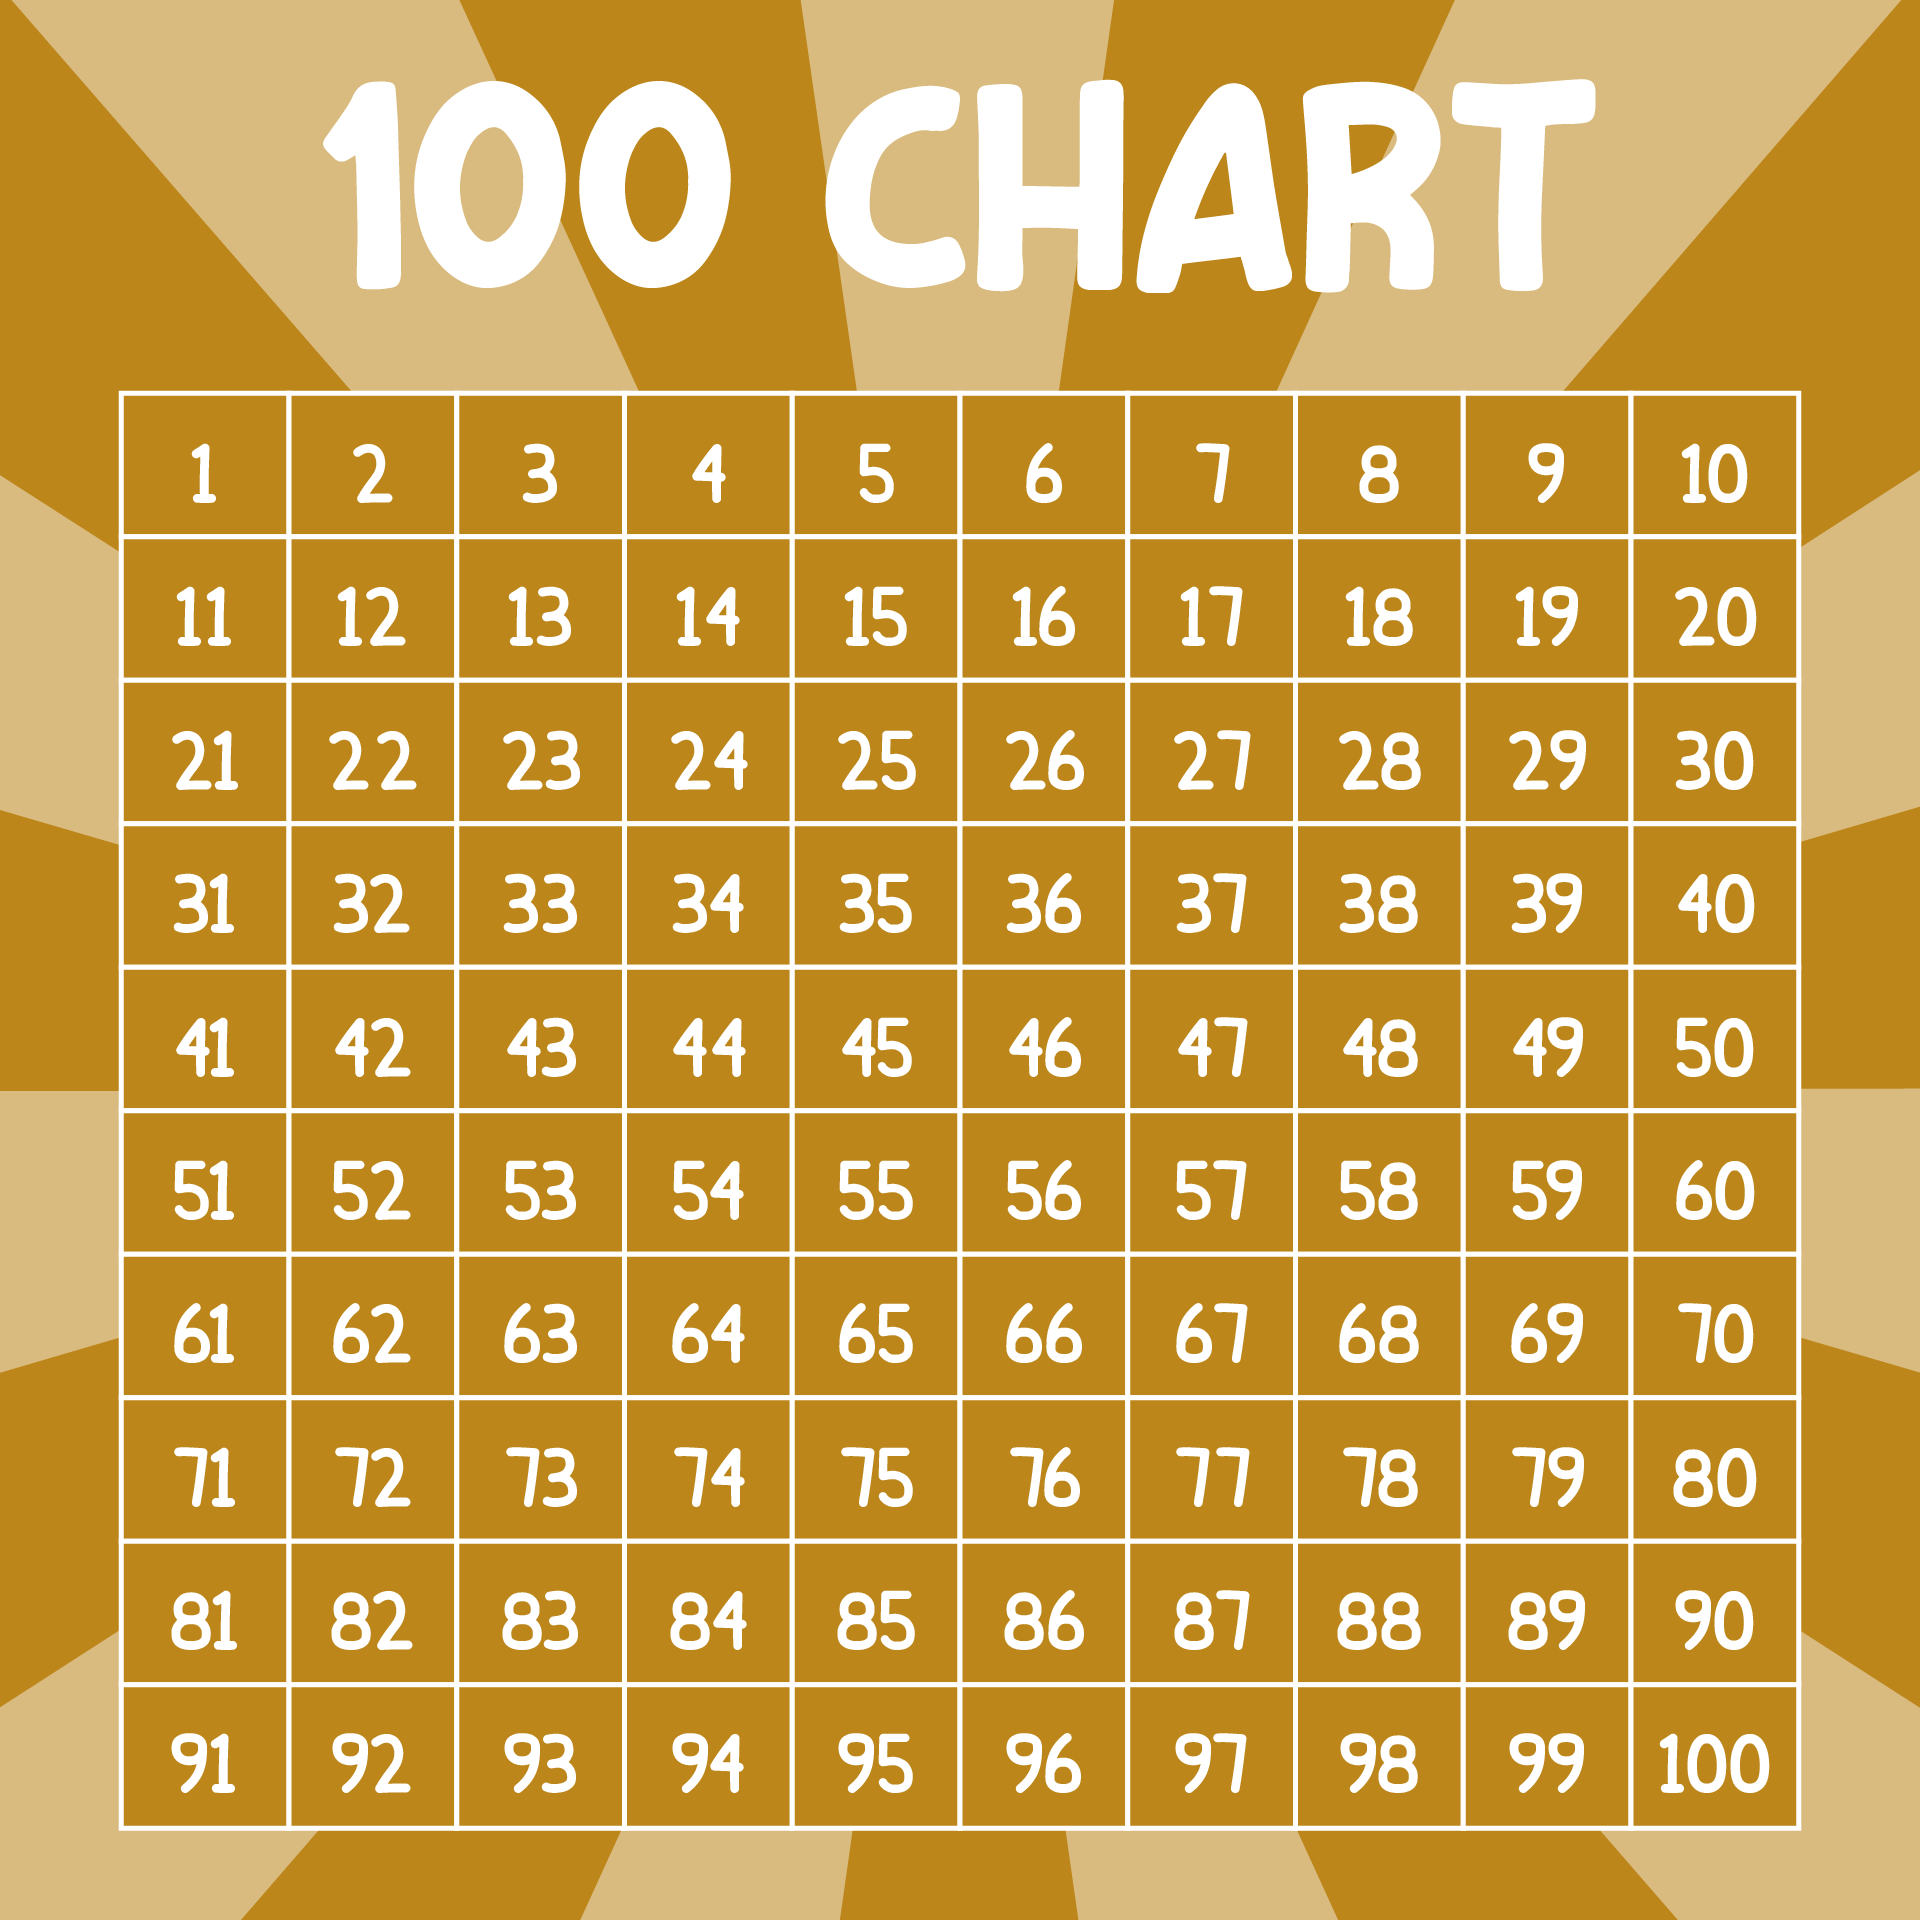 Hundreds Chart Printable